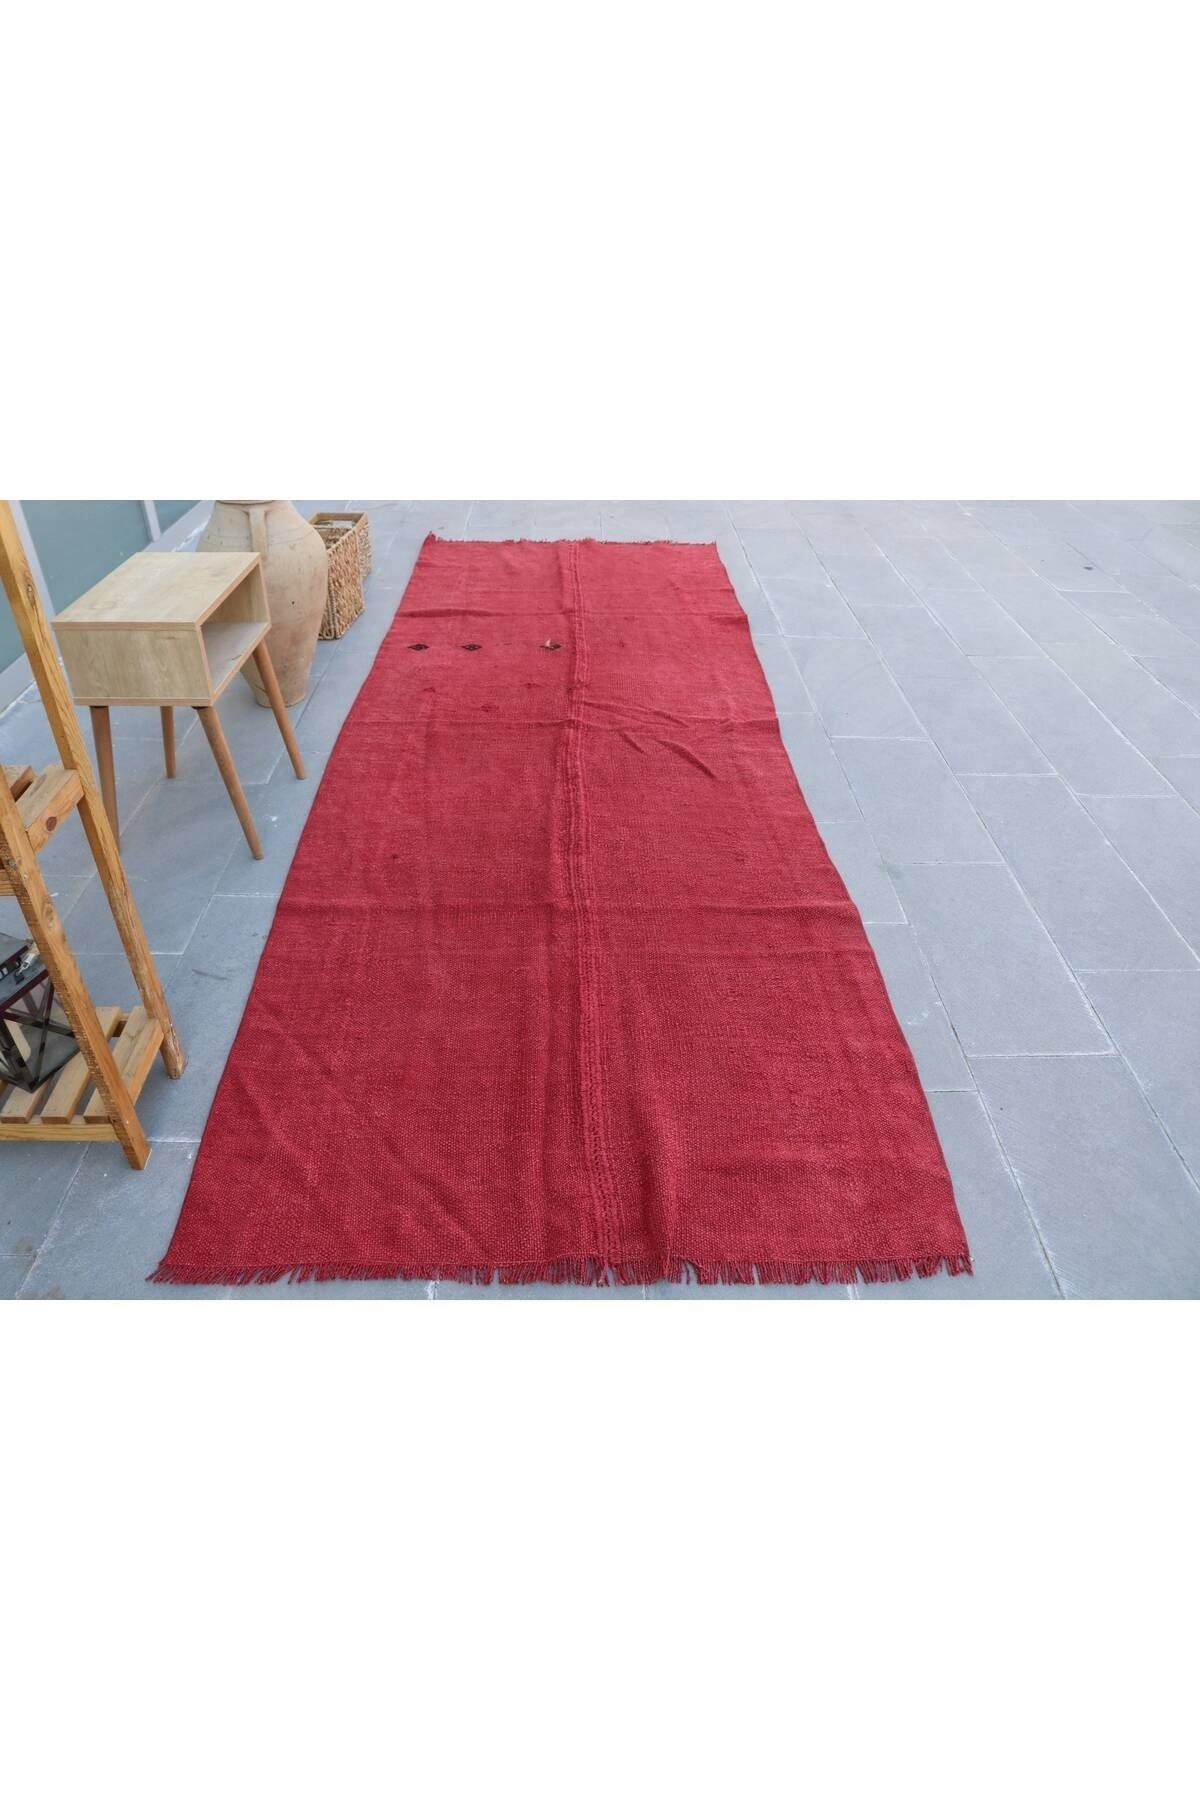 Kayra Export Kırmızı Antik Halı, Türk Halı, 125x347 cm Yolluk Halı, Anadolu Halı, Mutfak Halı, Koridor Halı